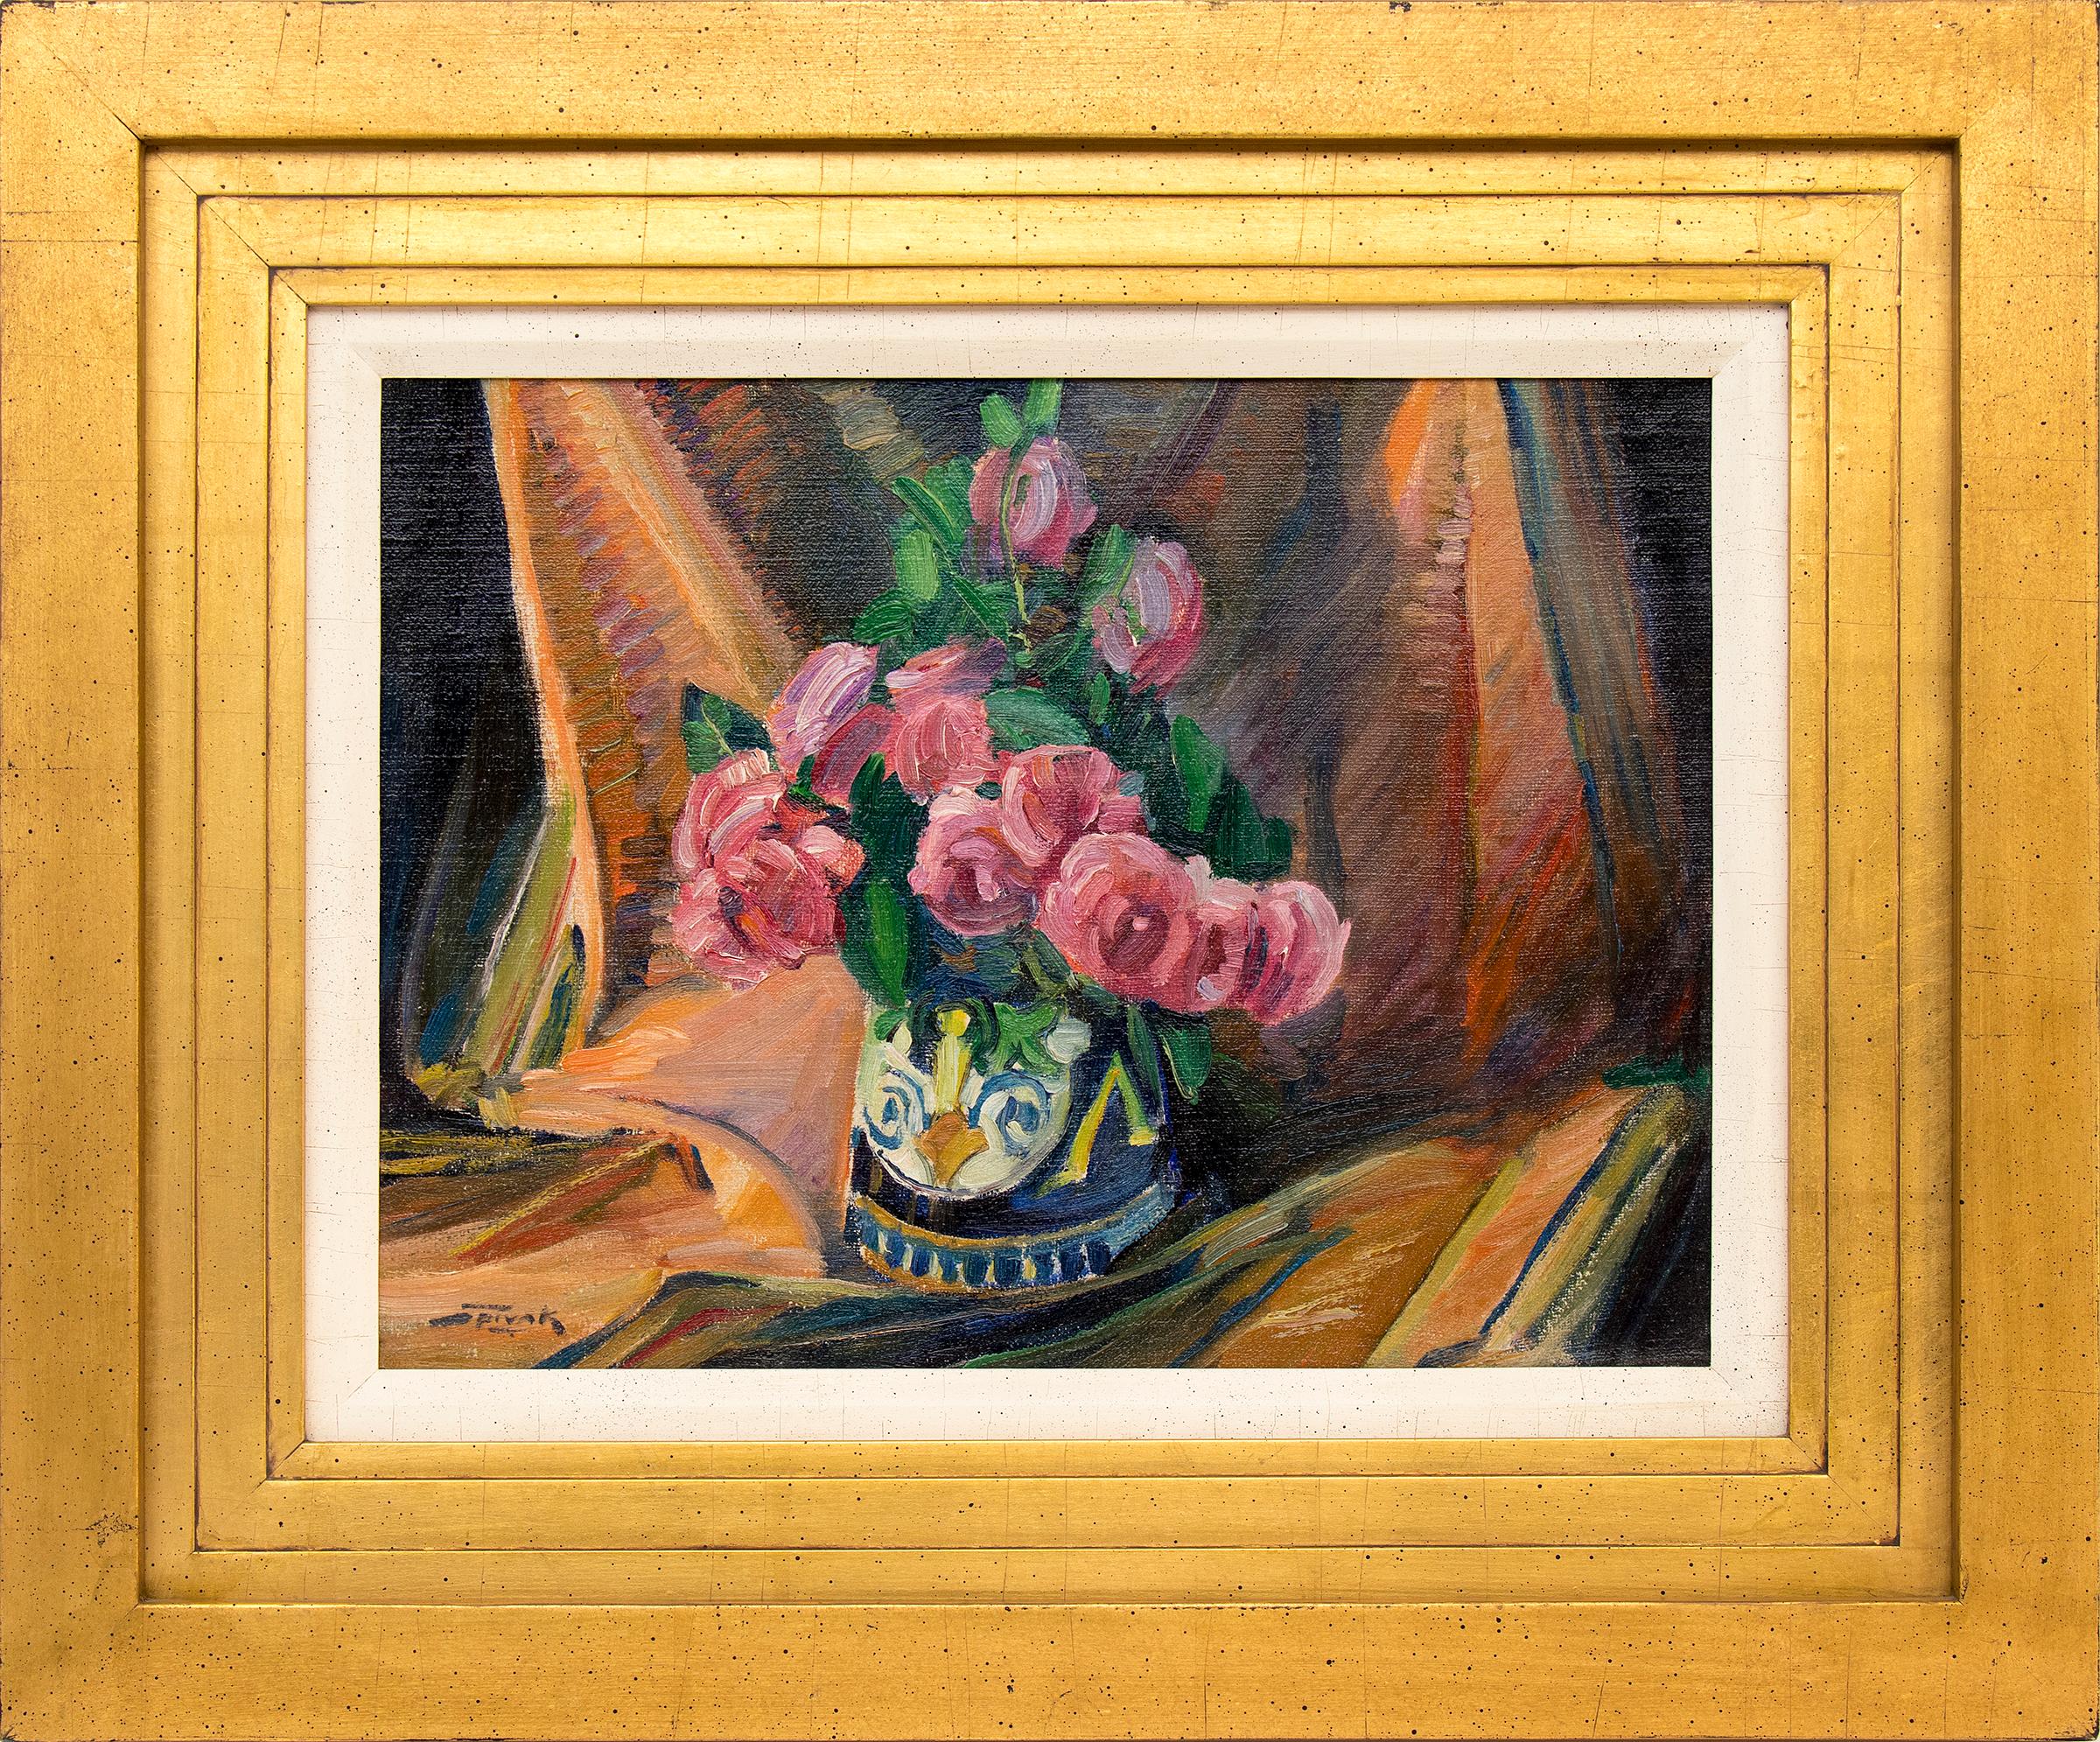 Still-Life Painting David Spivak - Nature morte avec roses roses, peinture à l'huile intérieure encadrée, rose et orange